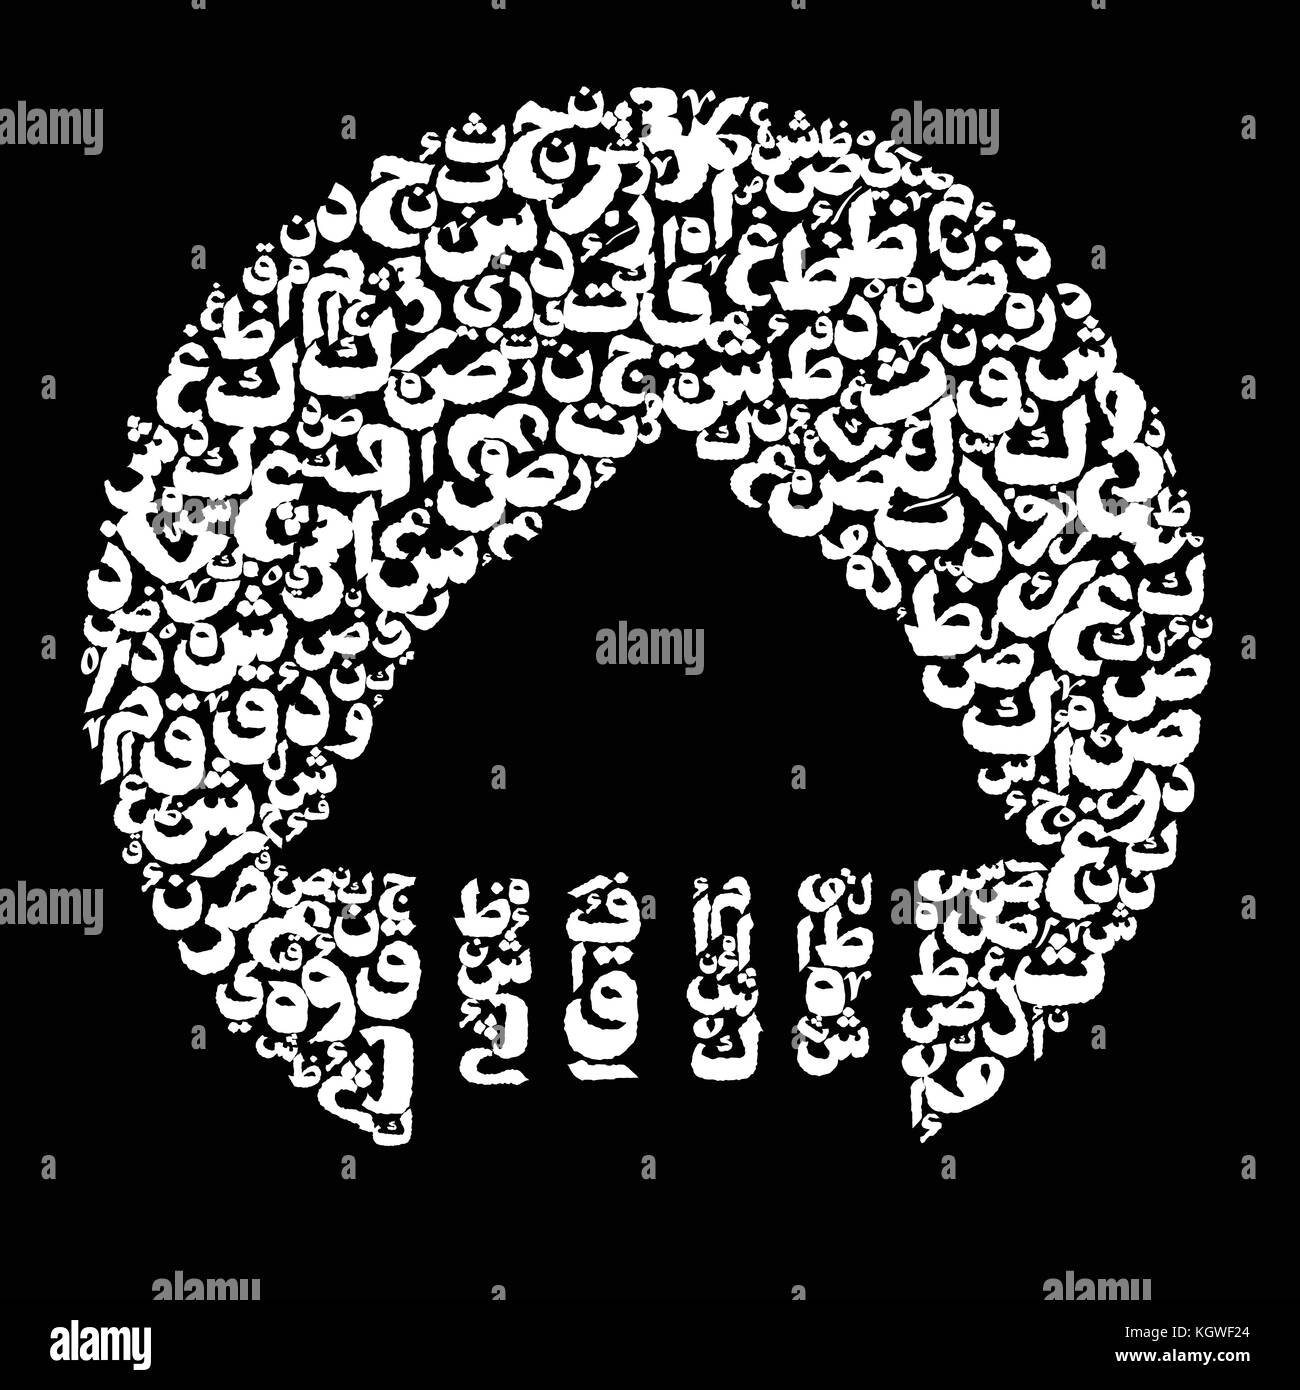 Abstract materiale minerale di sfondo e luna piena con alfabeto arabo nella notte. background creativo astratto modello di impaginazione. carta illustrazione arte Illustrazione Vettoriale